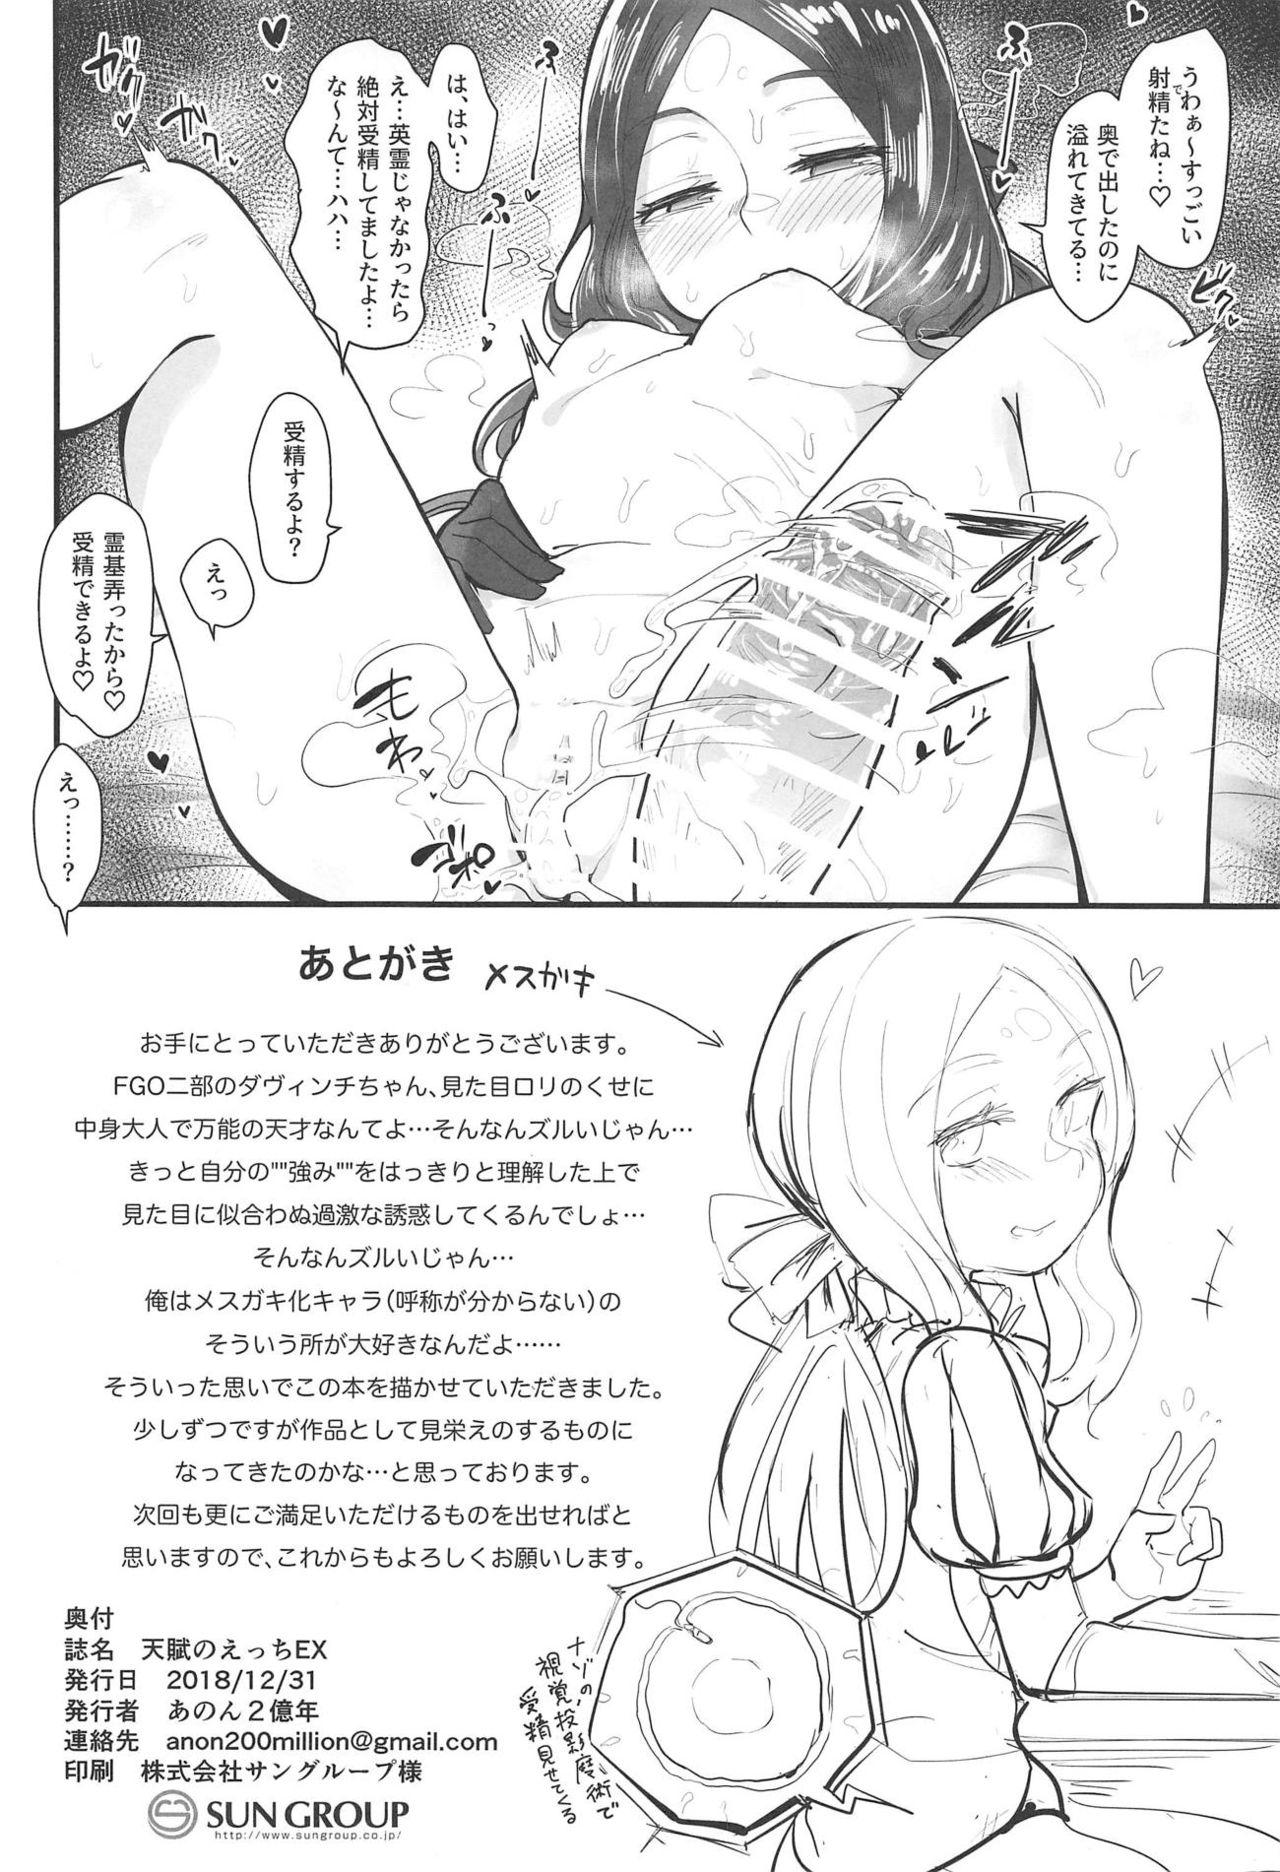 Chibola Tenpu no Ecchi EX - Fate grand order This - Page 21